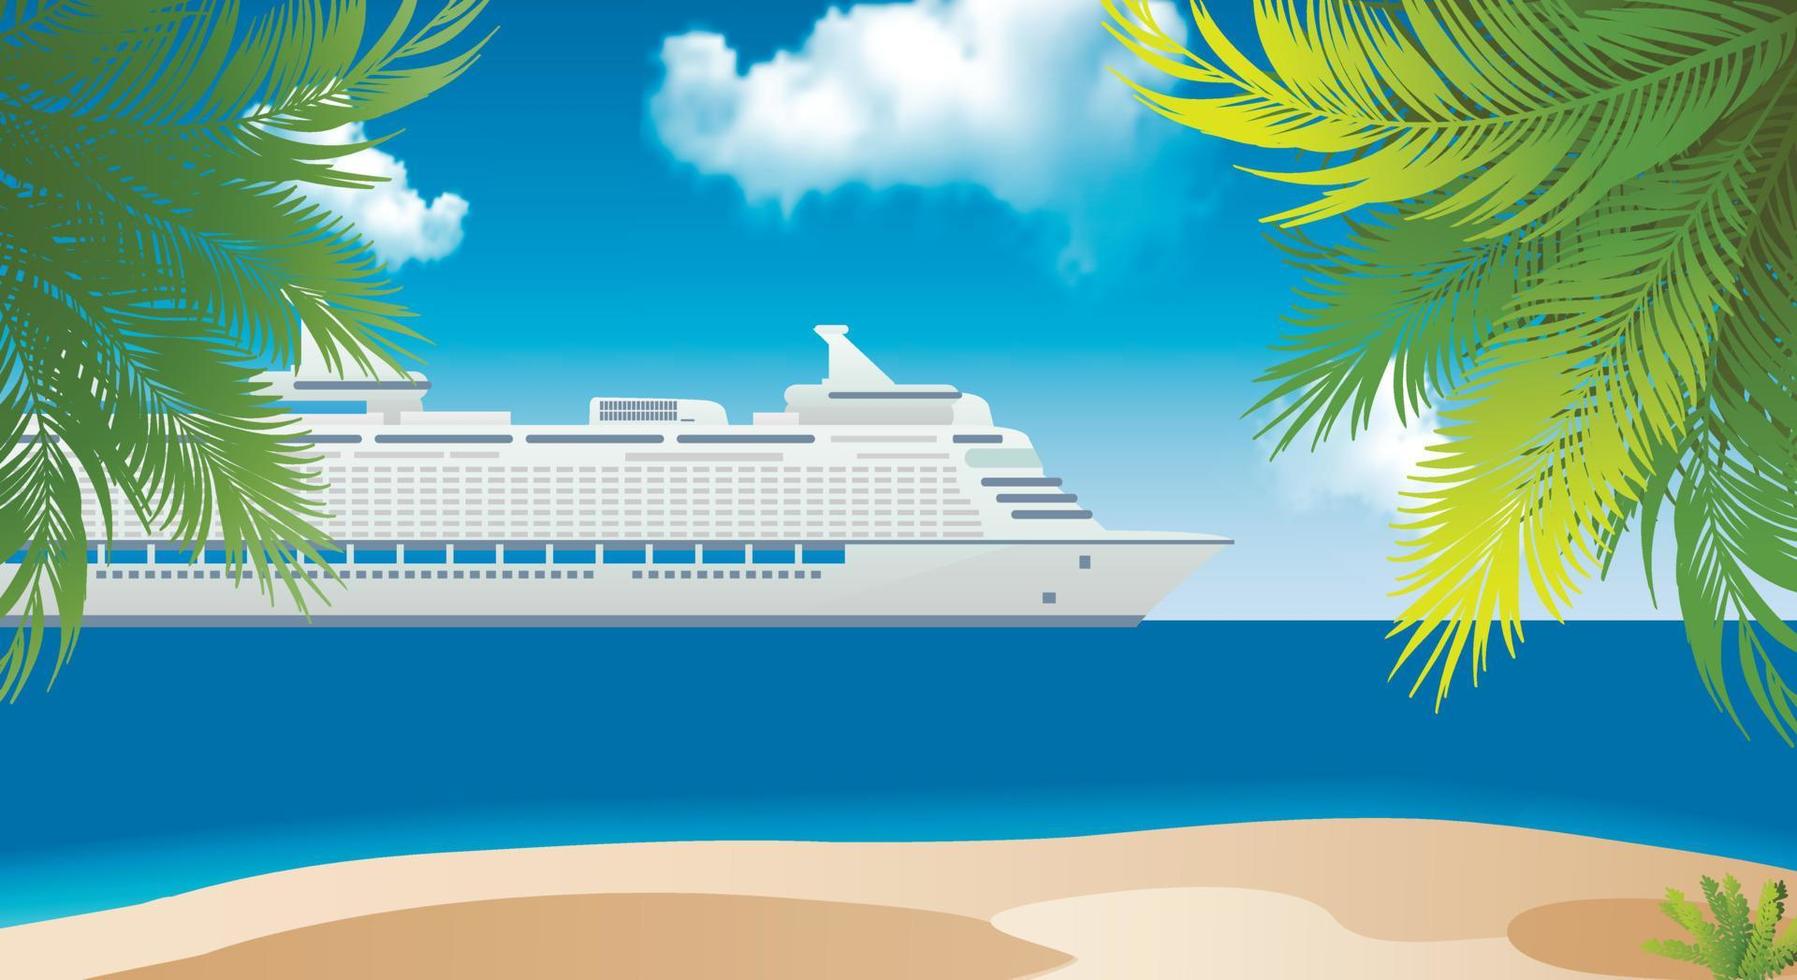 kryssningsfartyg nära ön med palmer i Karibien. tidig resebokning. resor banner. kopieringsutrymme. vektor illustration